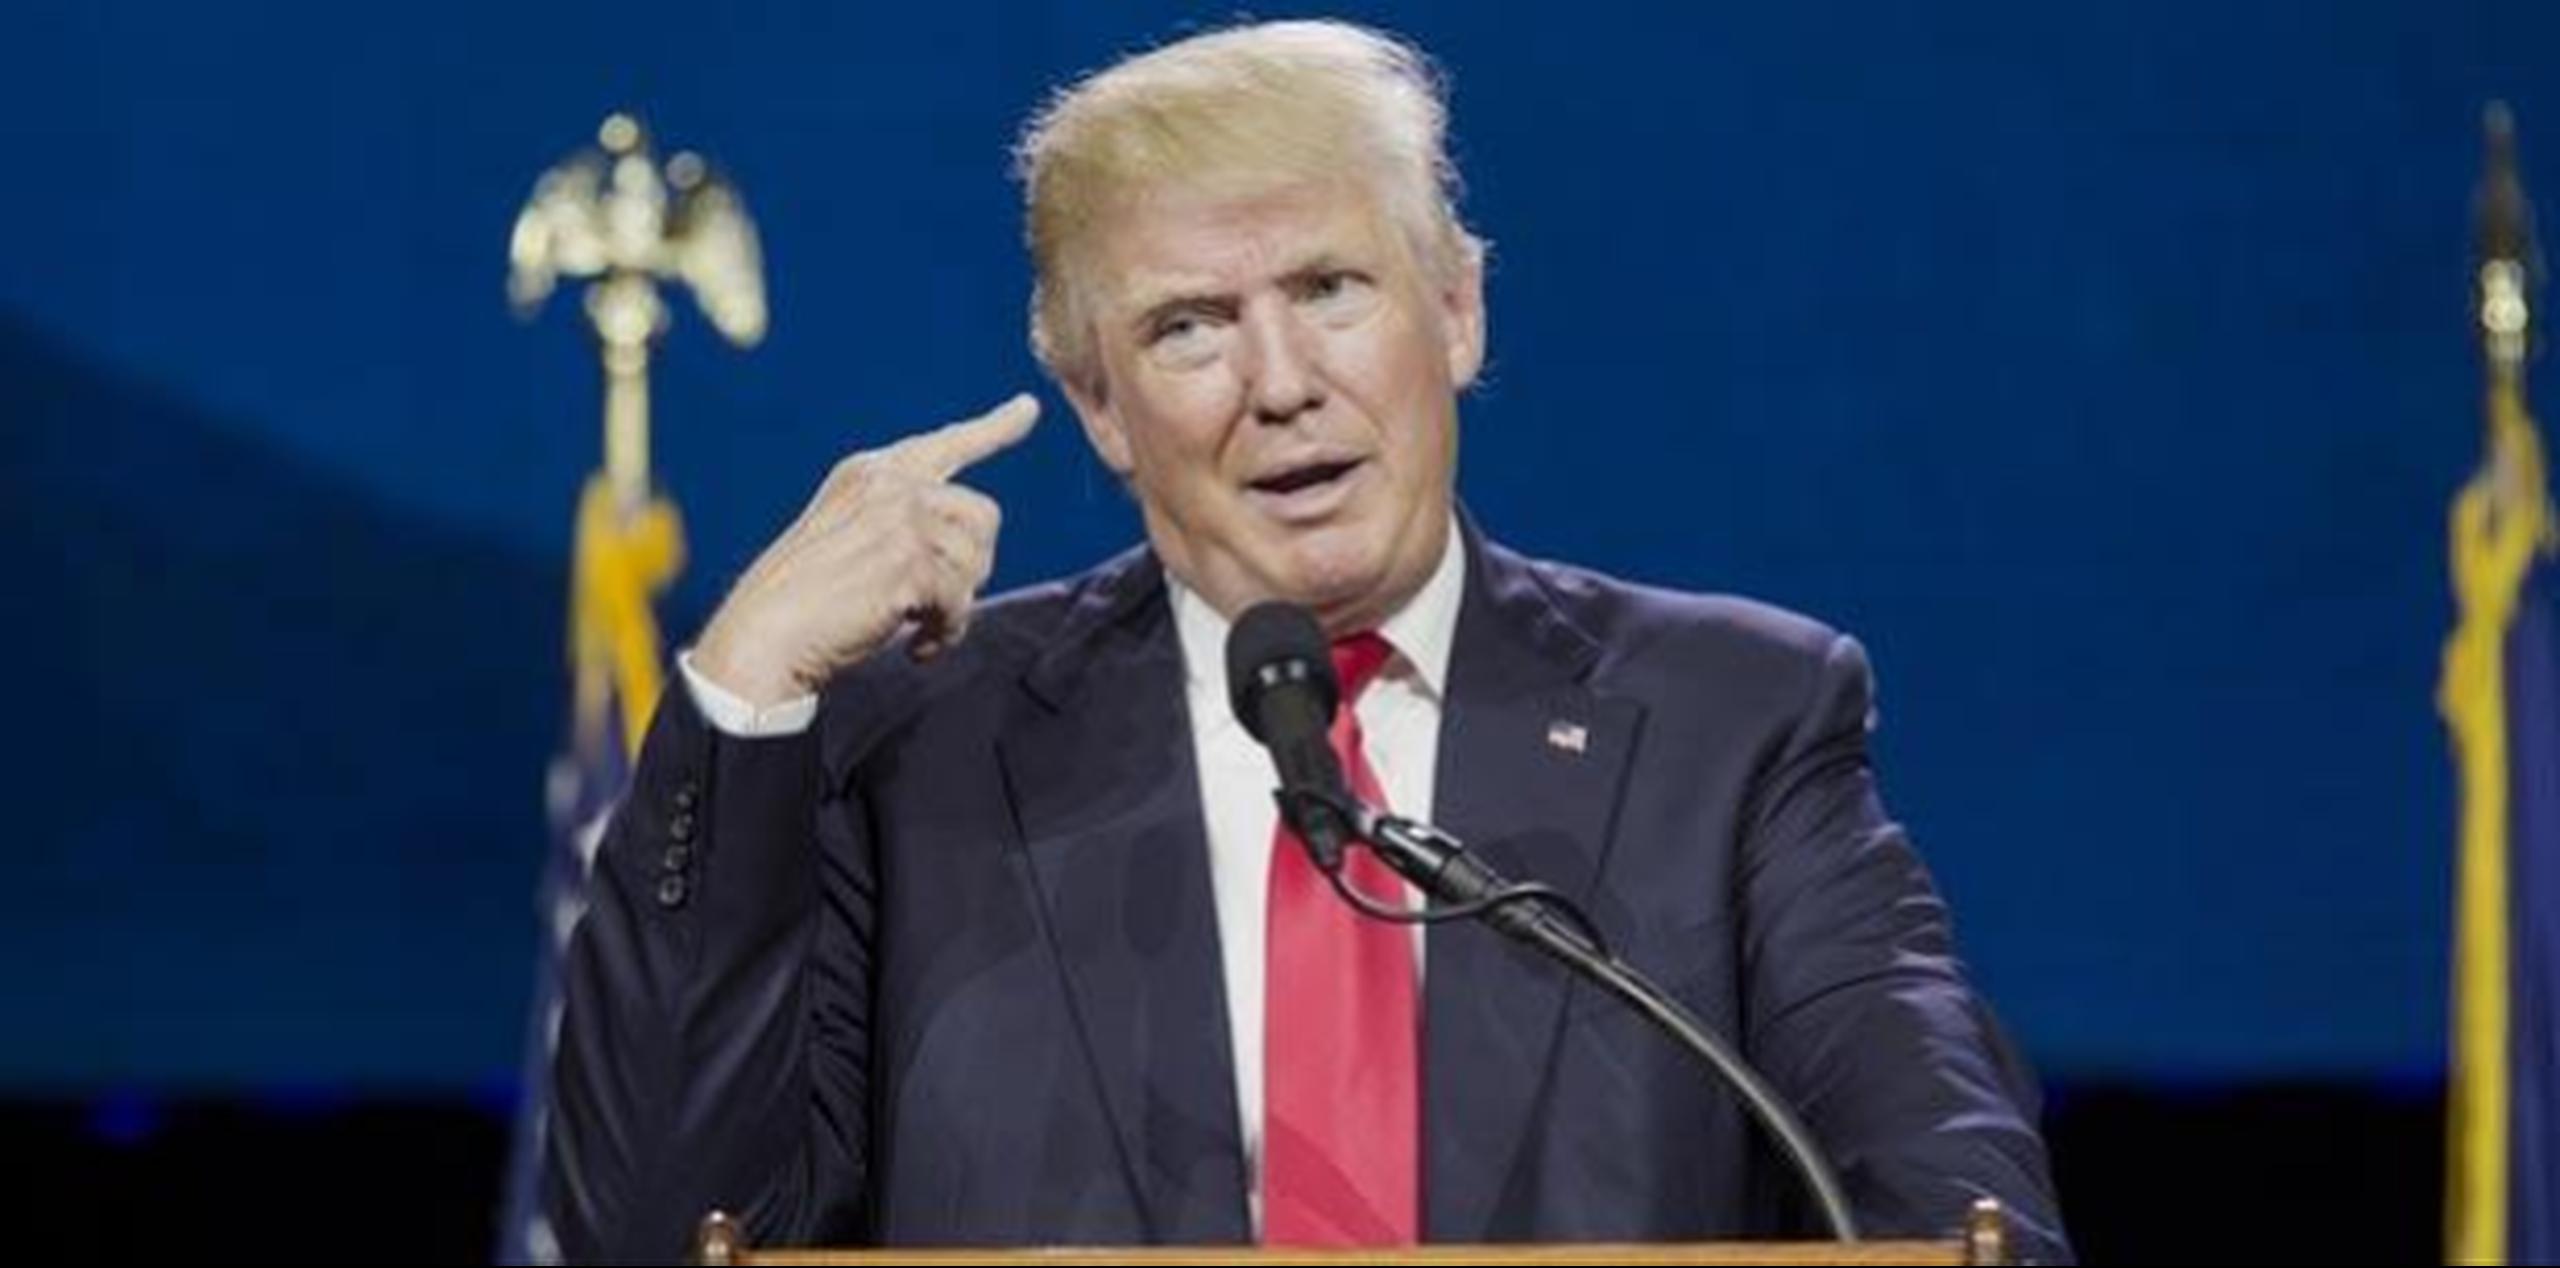 Donald Trump ha dicho que deportará a los 11 millones de indocumentados que se calcula viven en los EEUU. (Archivo)